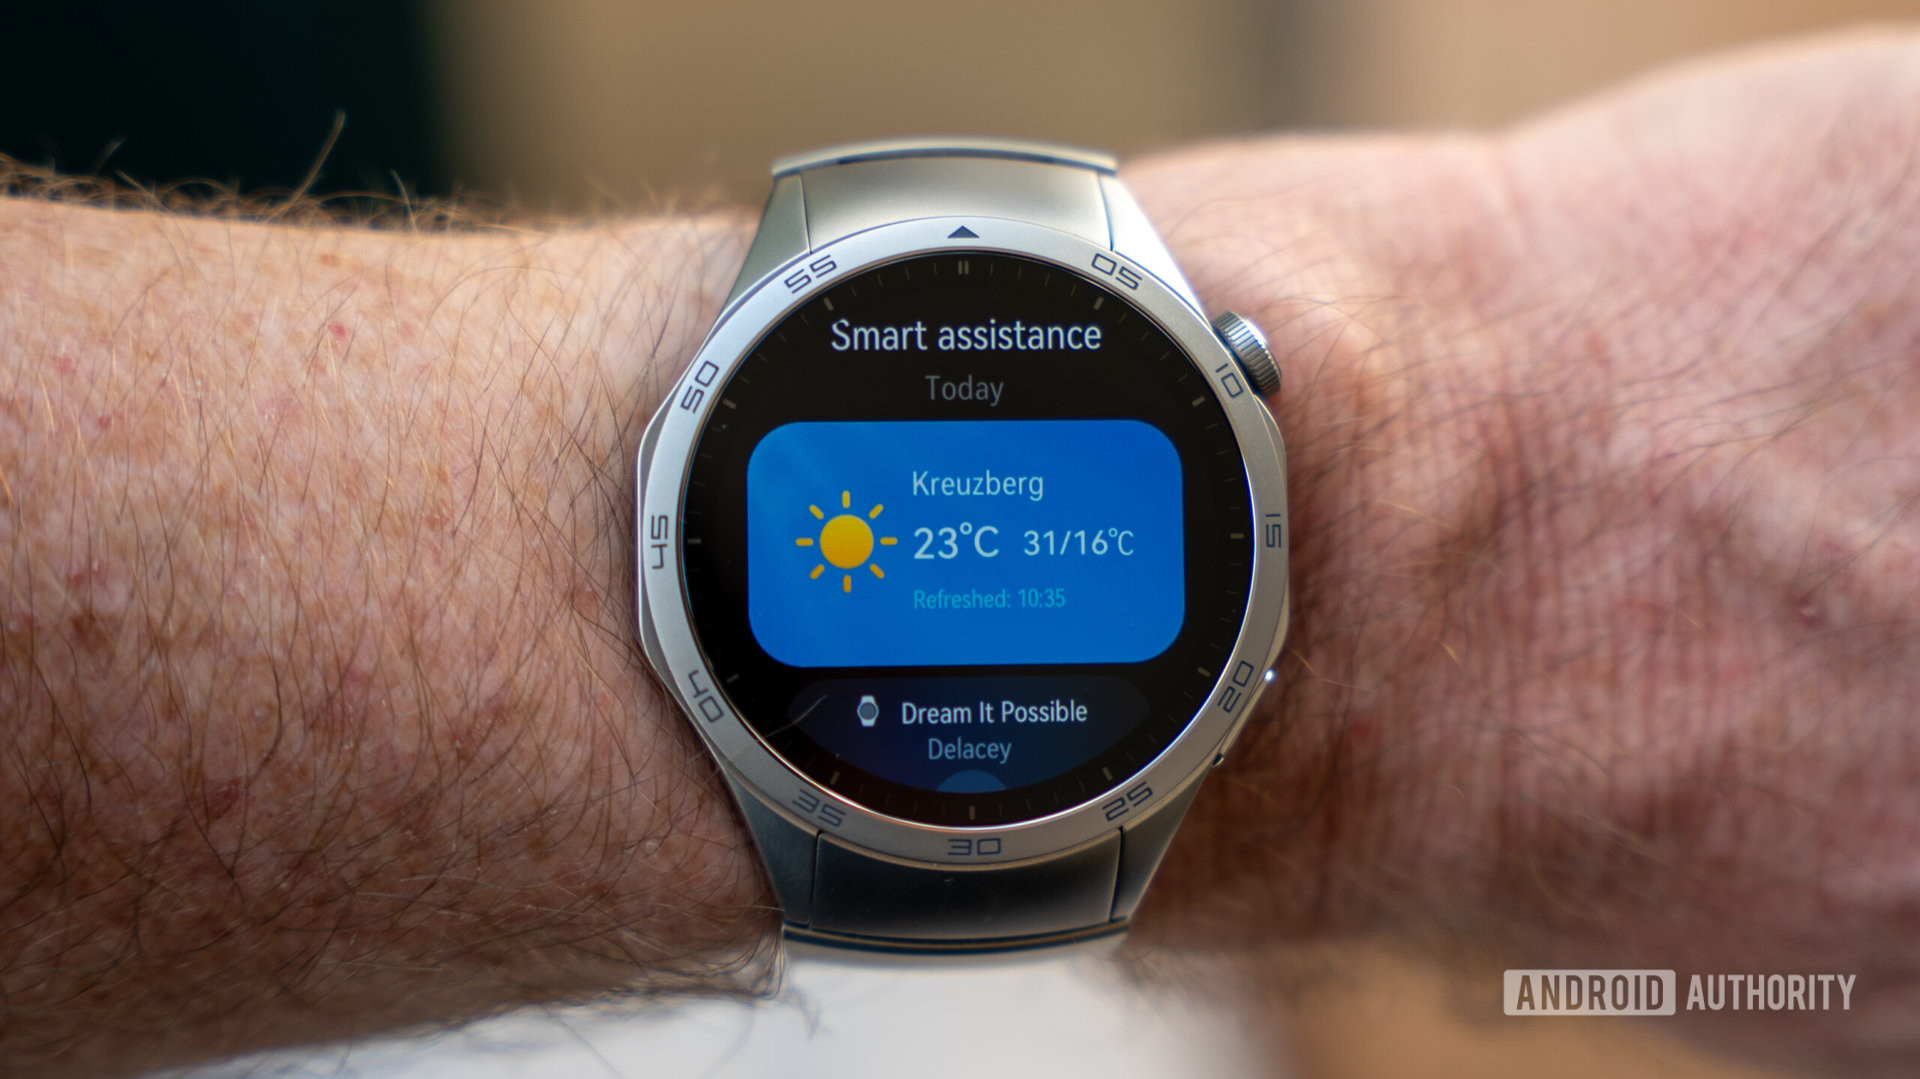 Huawei Watch GT 4 smartwatch smart assistance screen on wrist